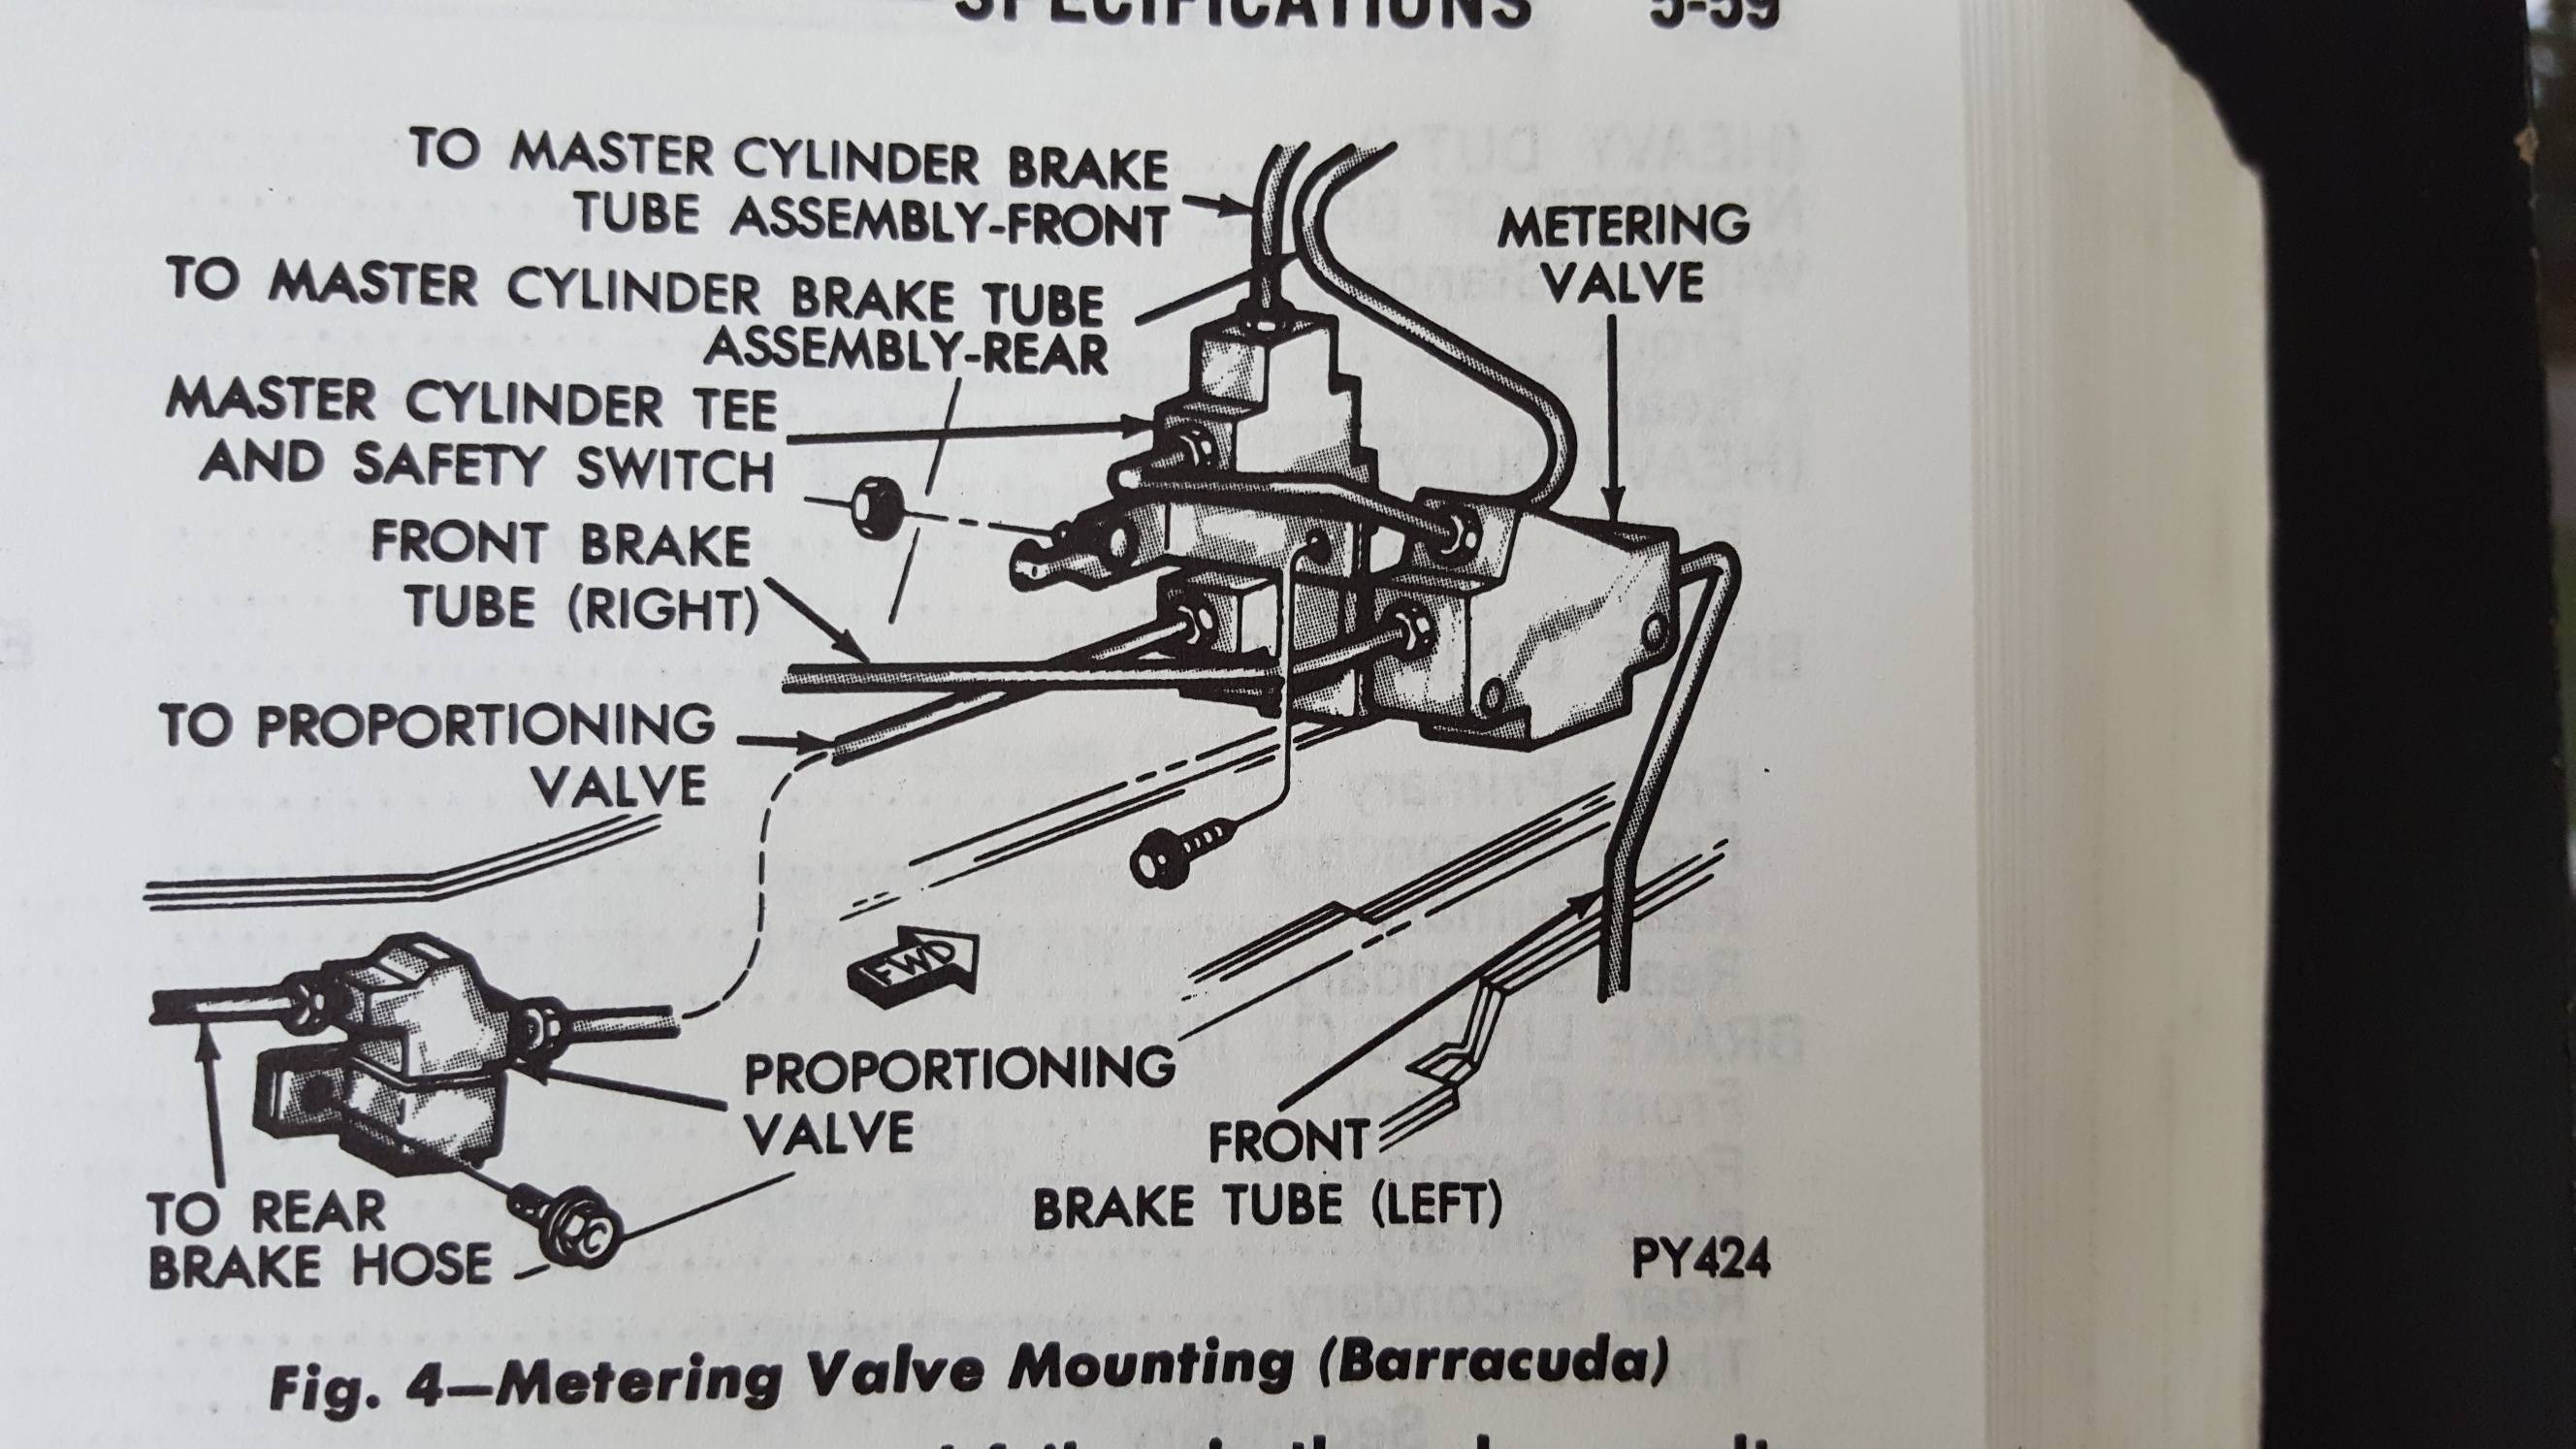 1970 Repair Manual.jpg